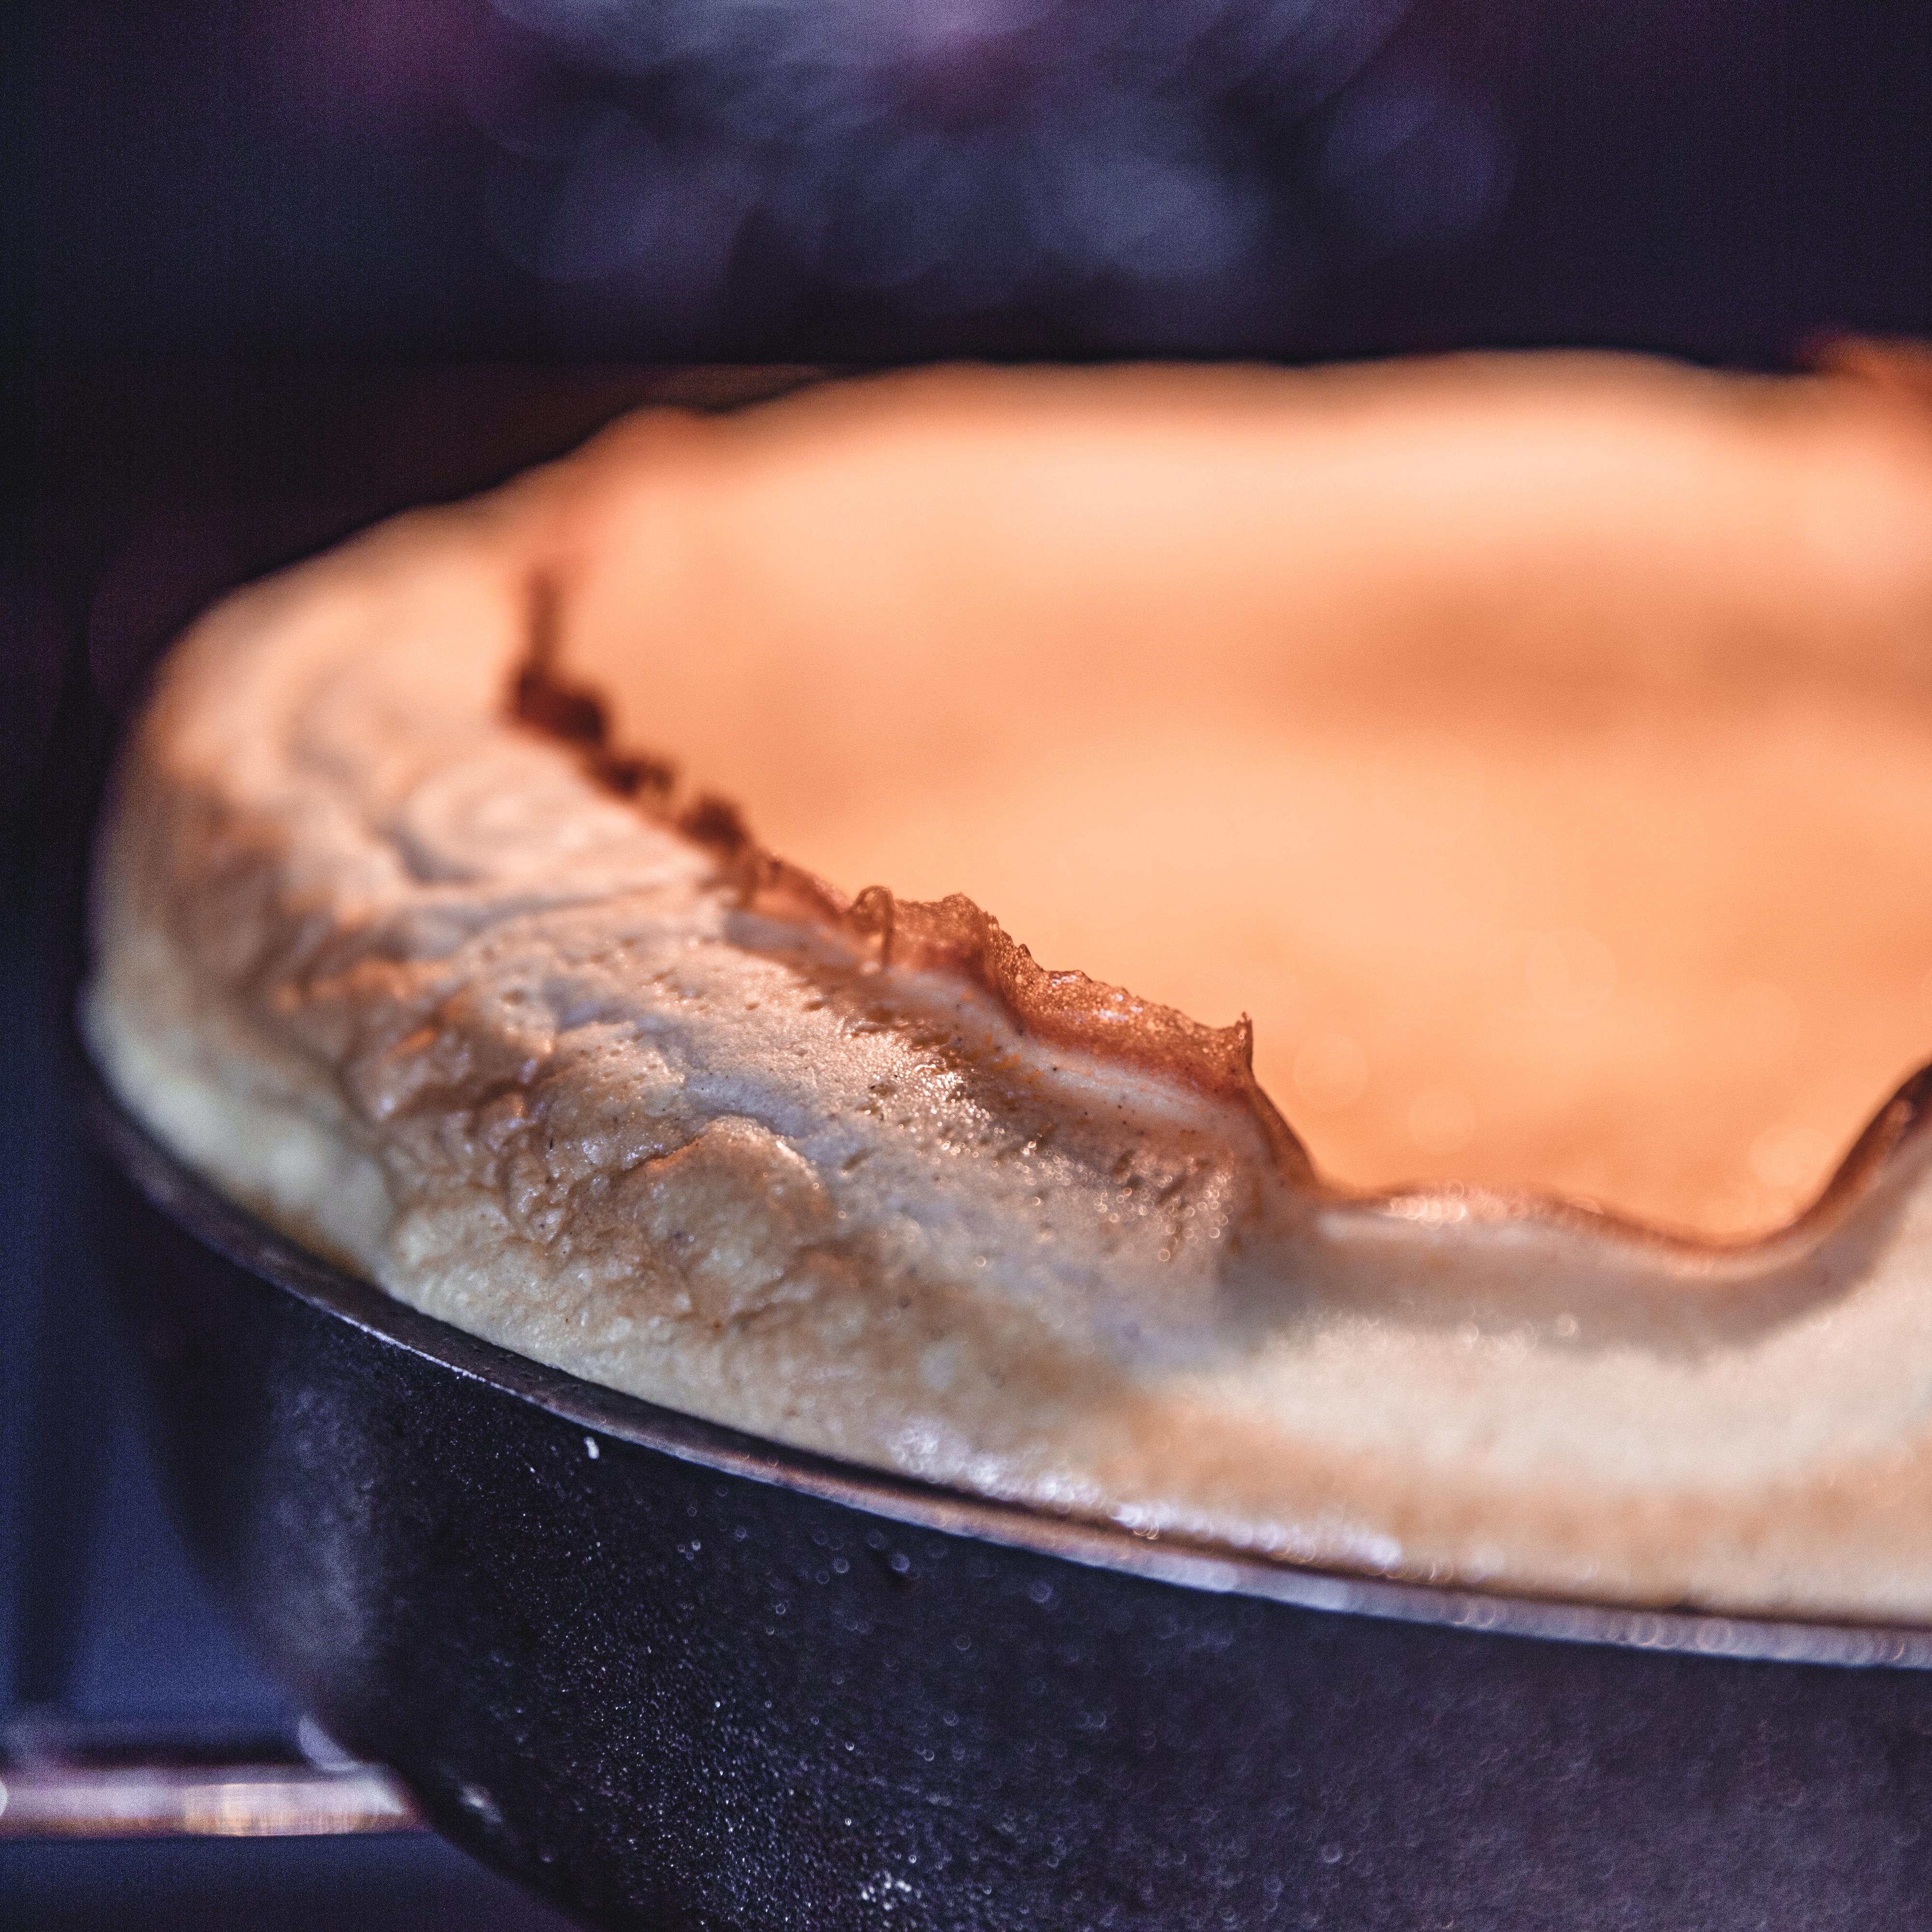 Stek pannekaken i cirka 20 minutter - til kantene er hevet og gylne. Det skal bli en fordypning i midten, men hvis pannekaken ikke virker ferdigstekt i midten kan du senke temperaturen til 180 grader og la den stå 5 minutter til.